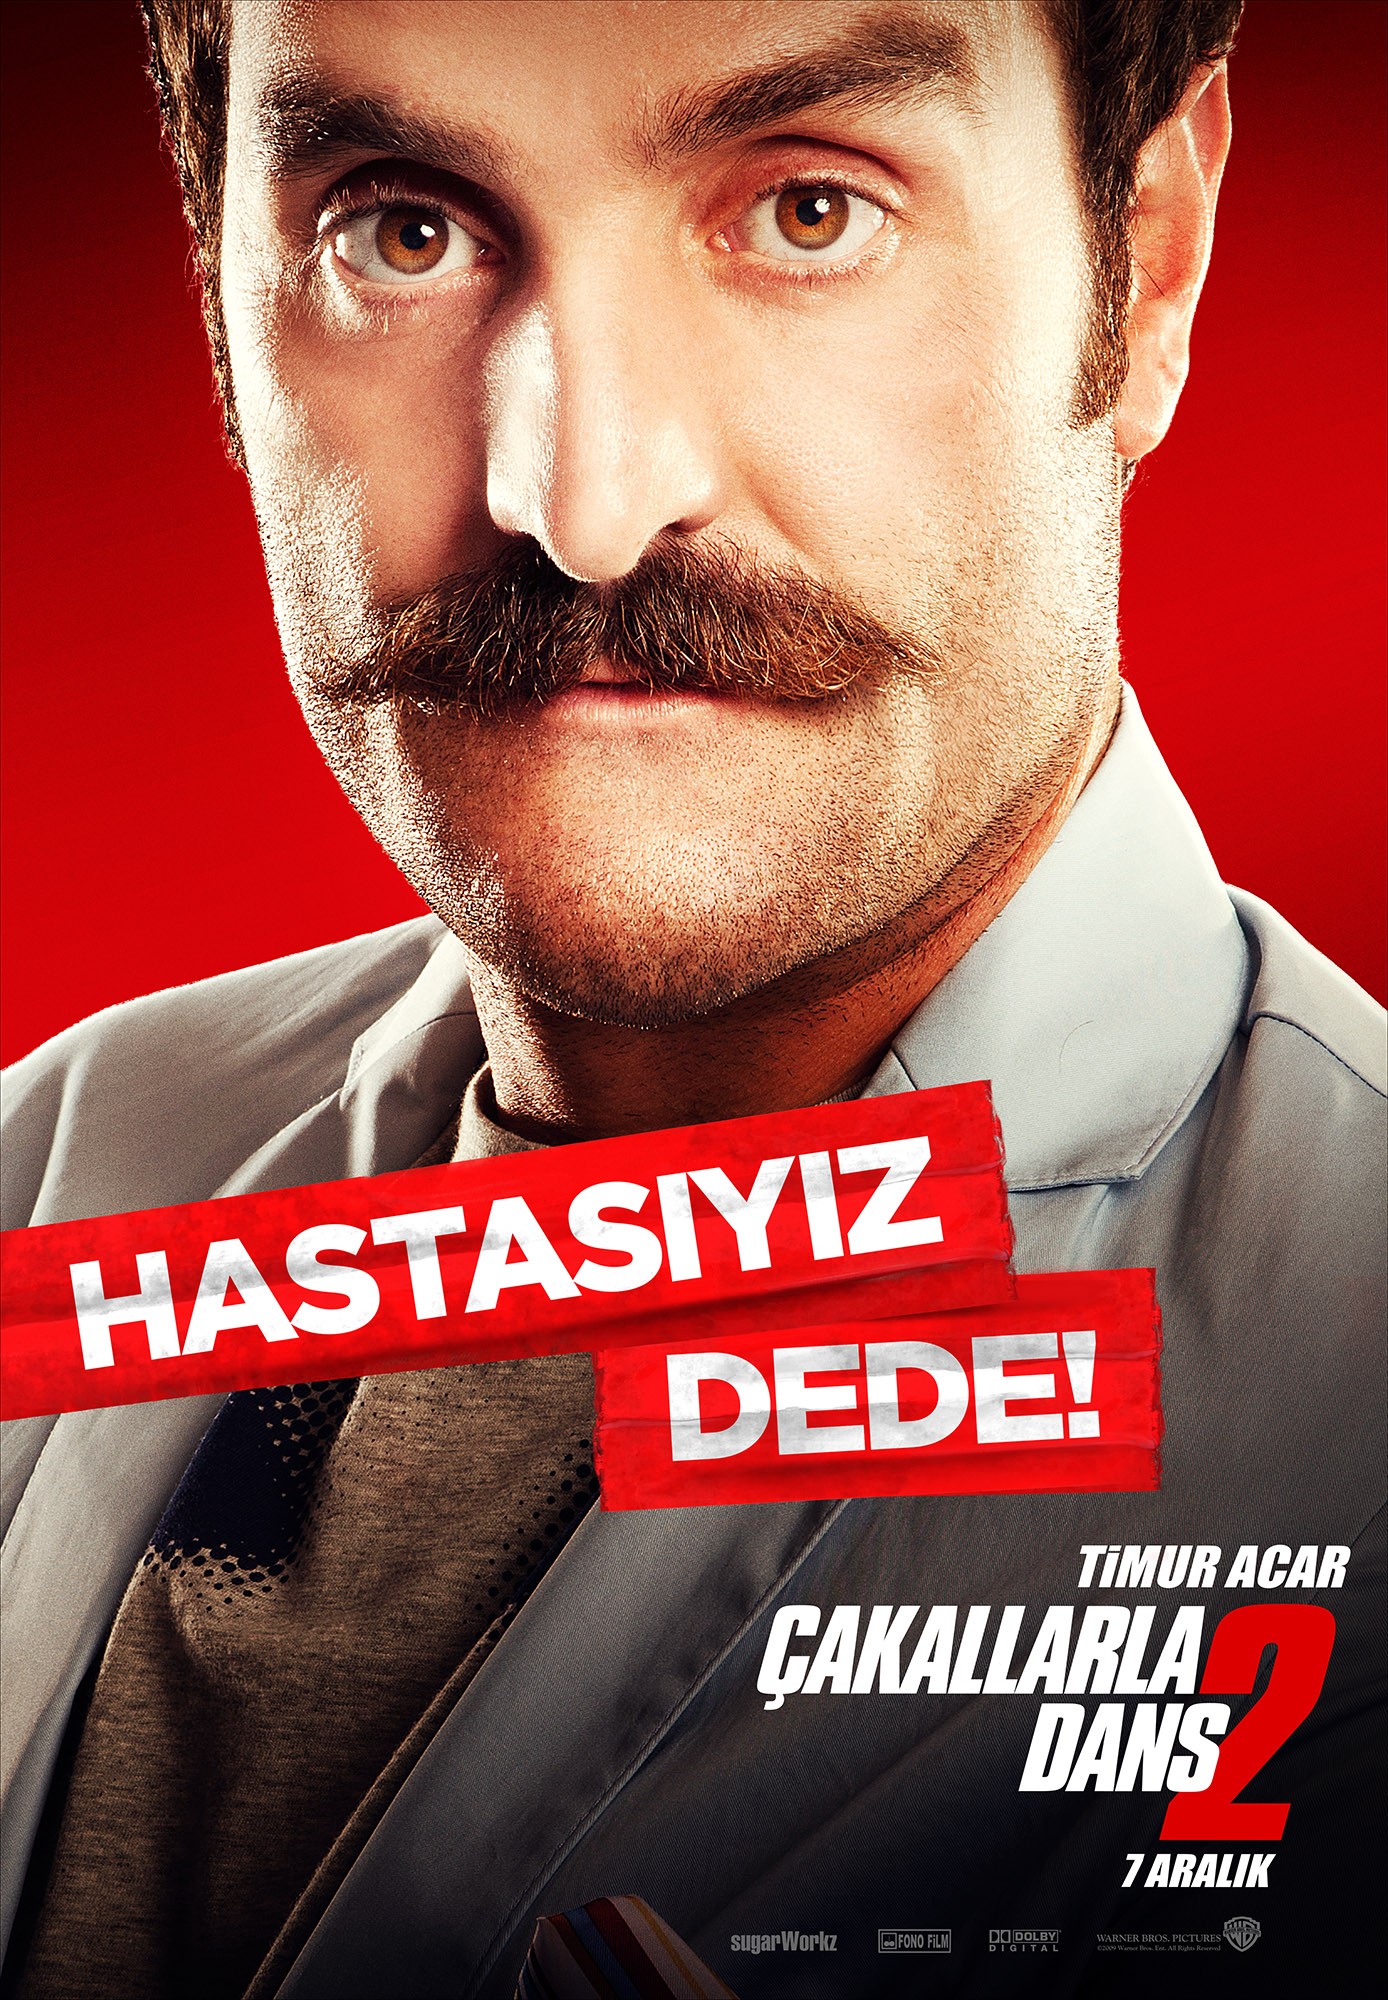 Mega Sized Movie Poster Image for Çakallarla dans 2 (#8 of 9)